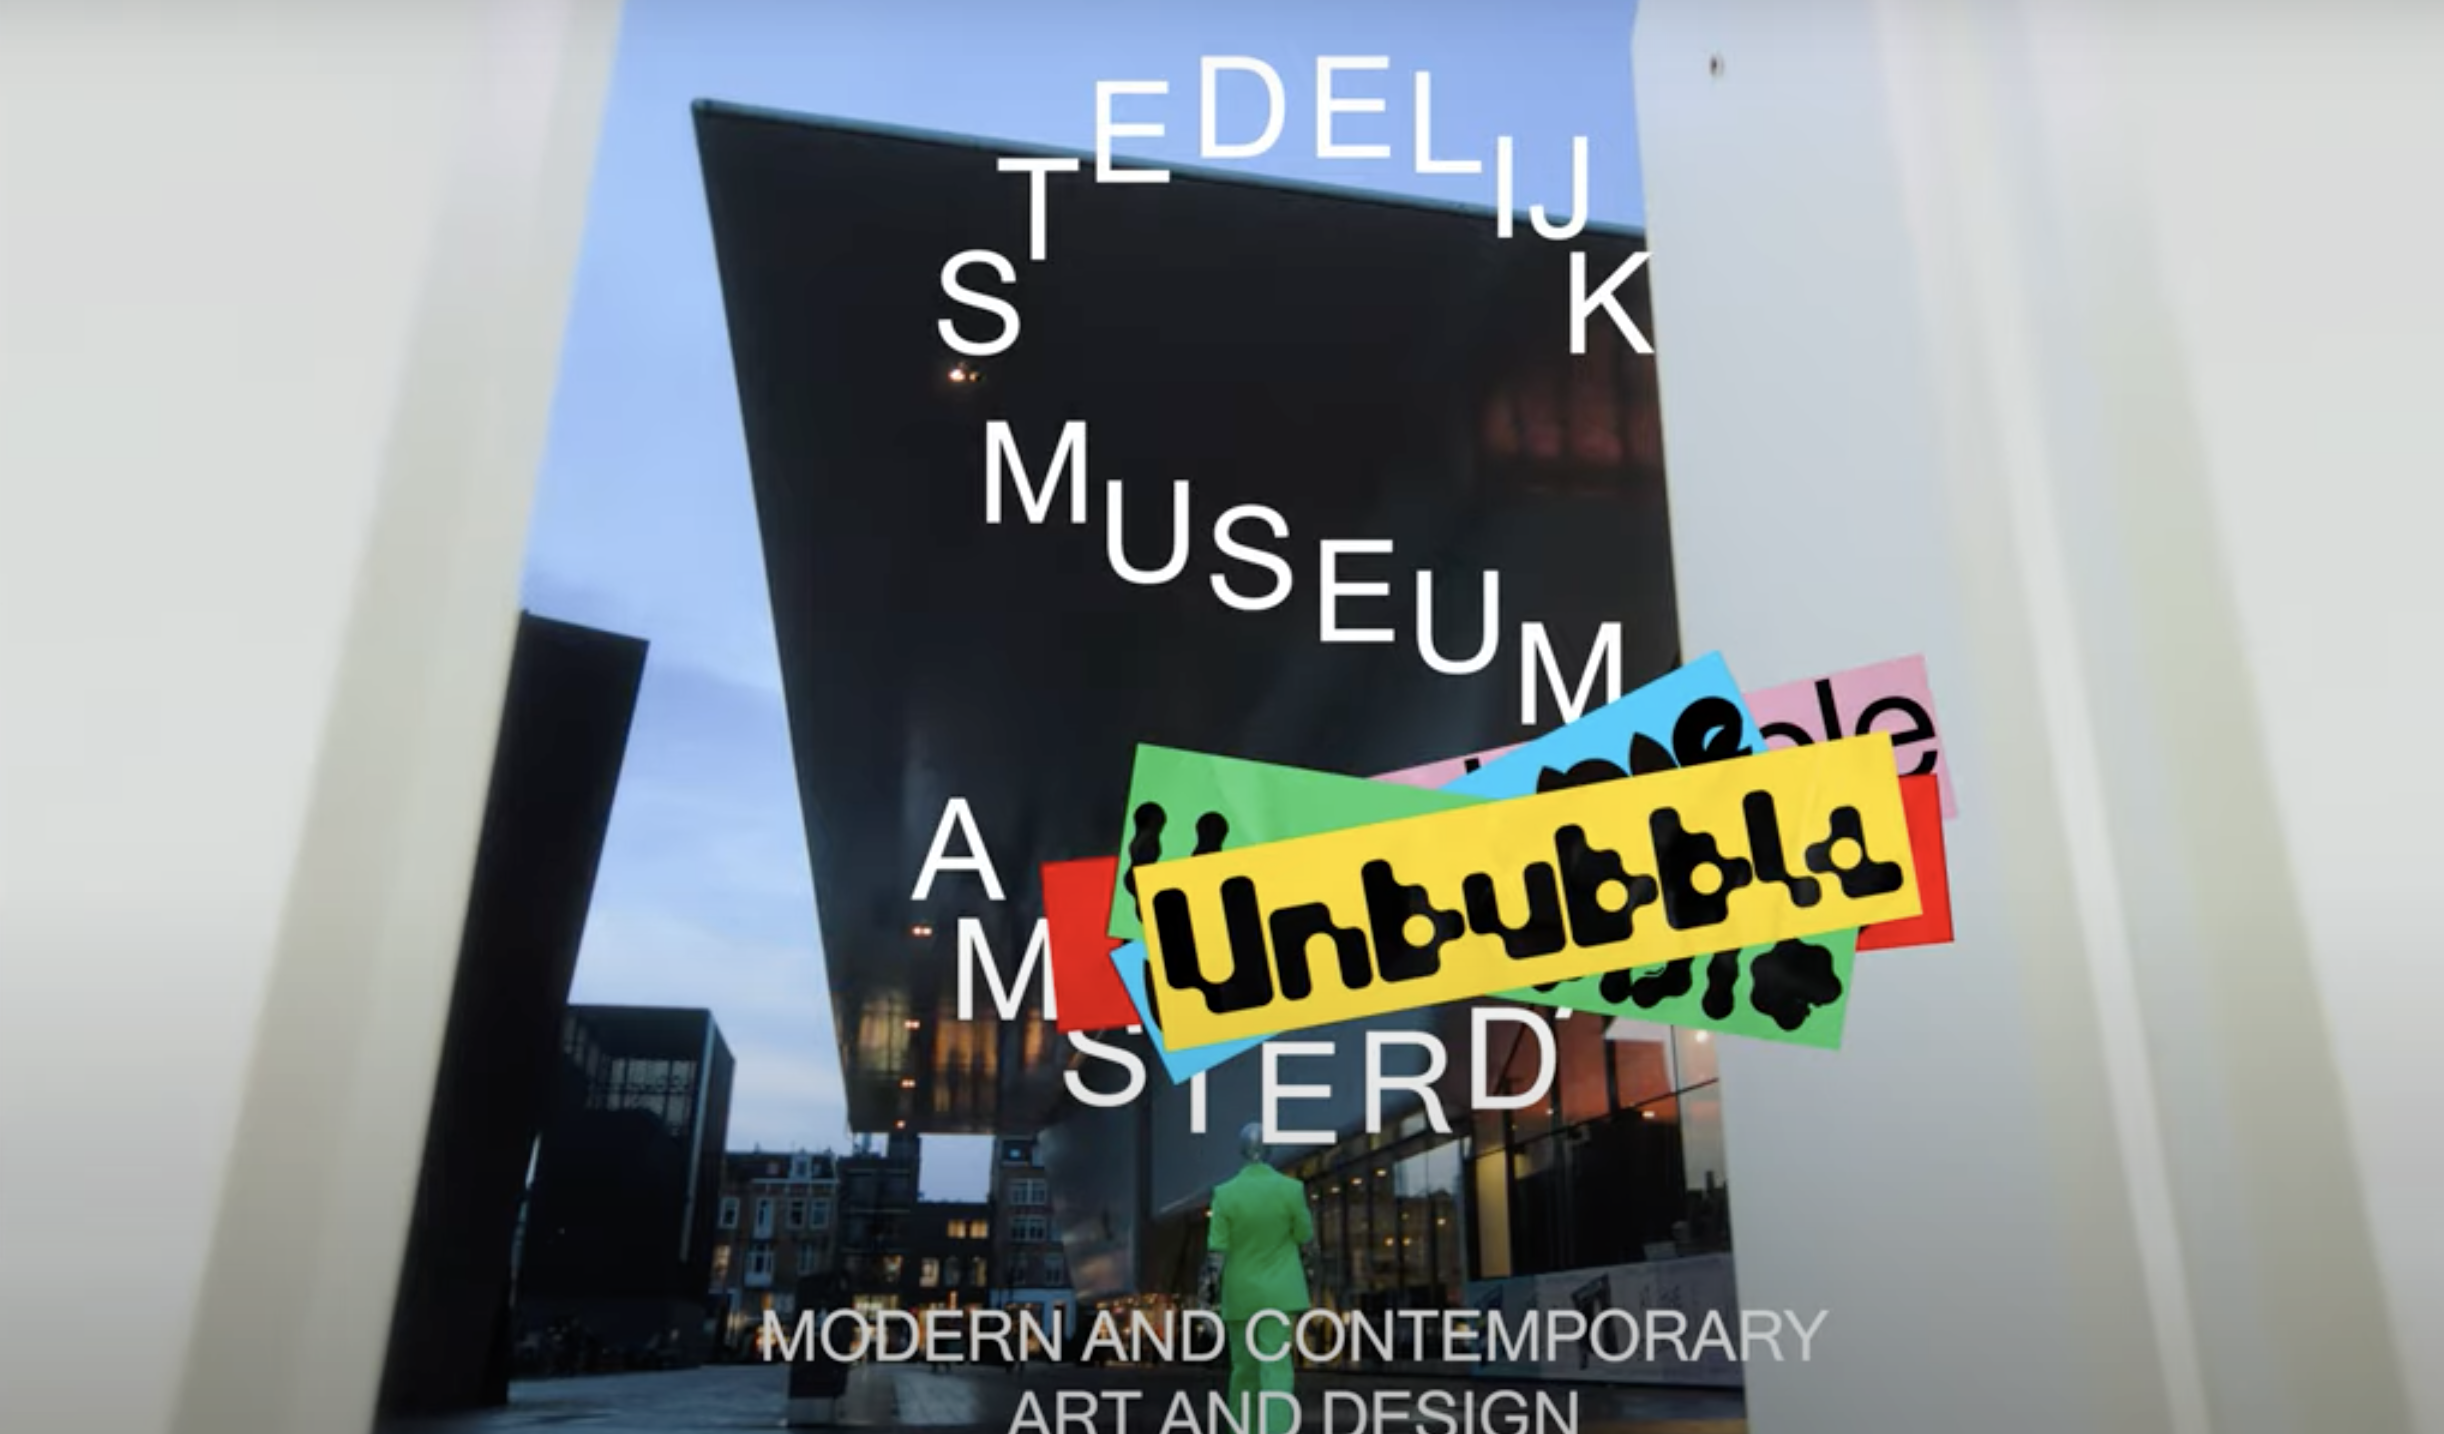 Stedelijk Museum ontsnapt eigen bubbel met allereerste merkcampagne en pay-off